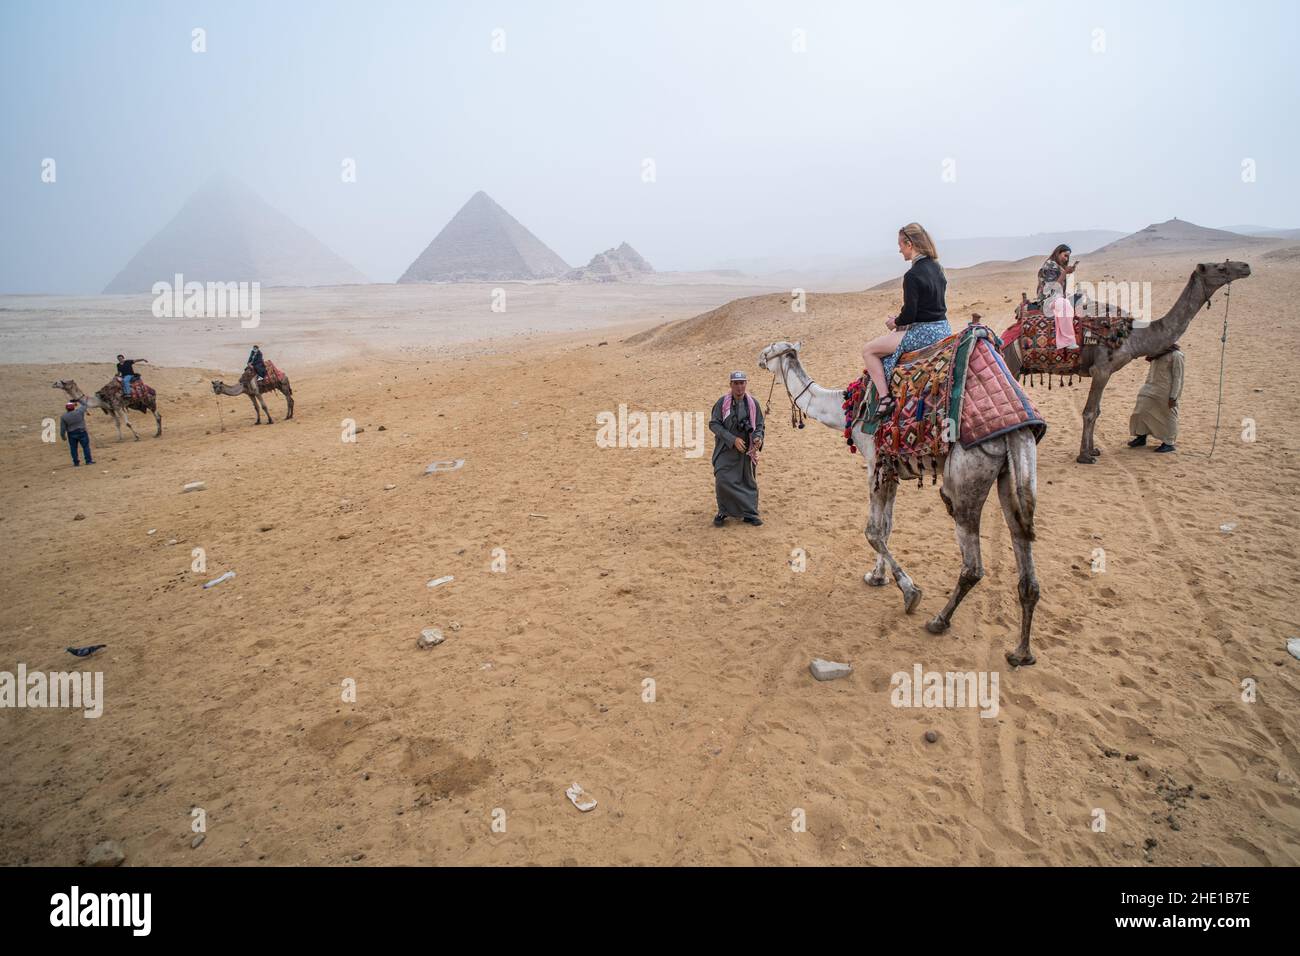 Eine alleinreisende Frau auf einem Kamelritt in der Wüste mit den Pyramiden von Gizeh, die durch starken Smog sichtbar sind. Stockfoto